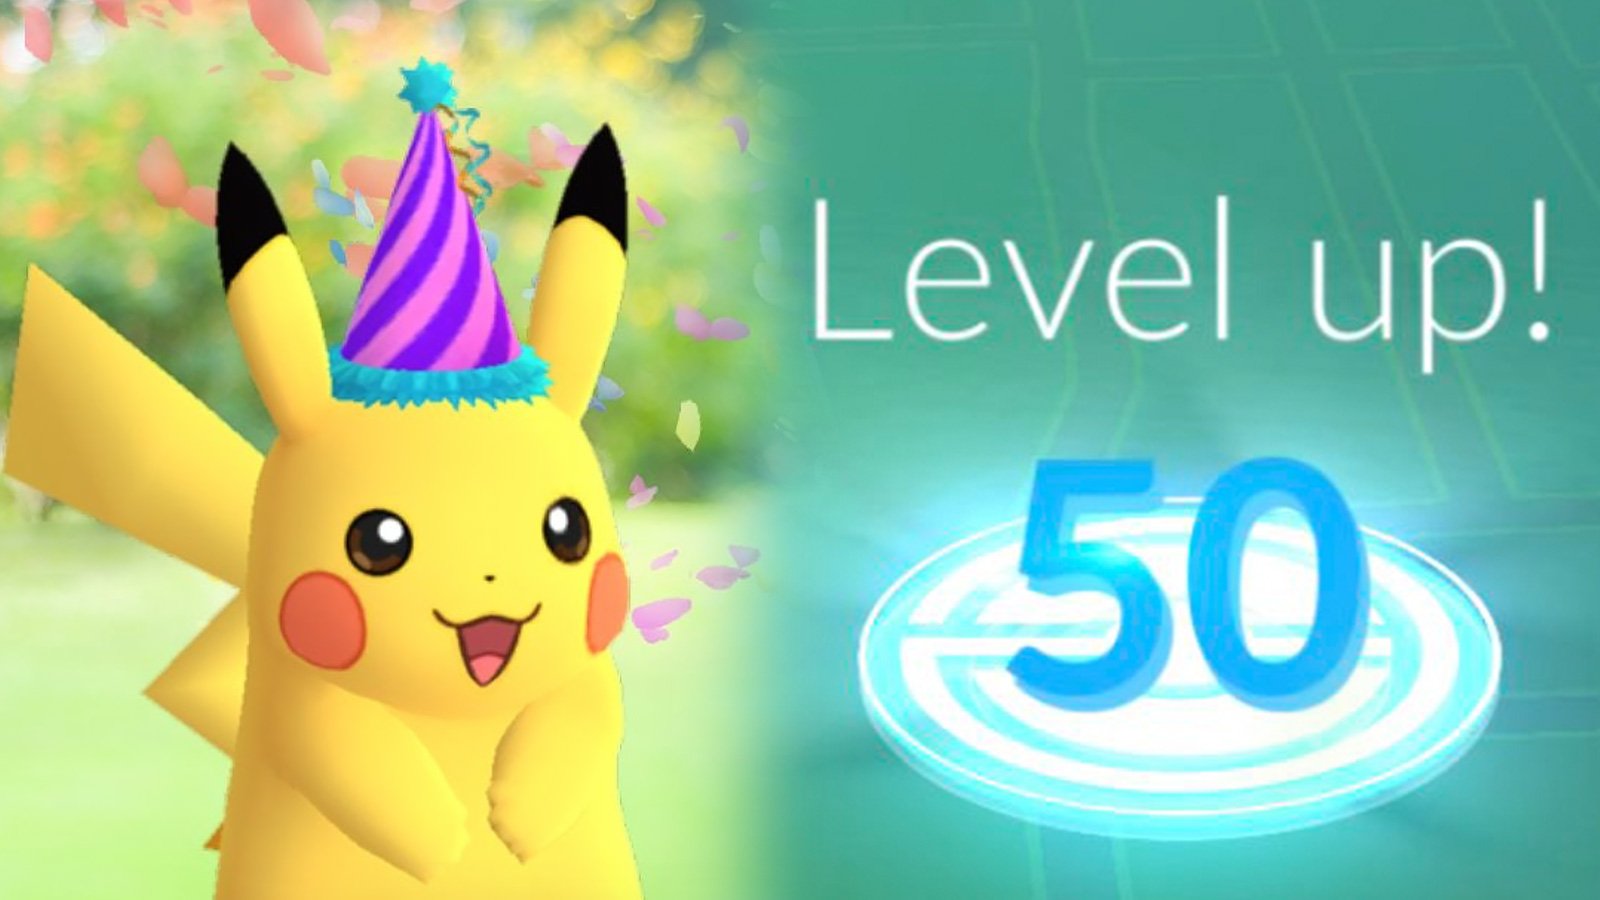 Pokemon Go LEvel 40 to 50 requirements